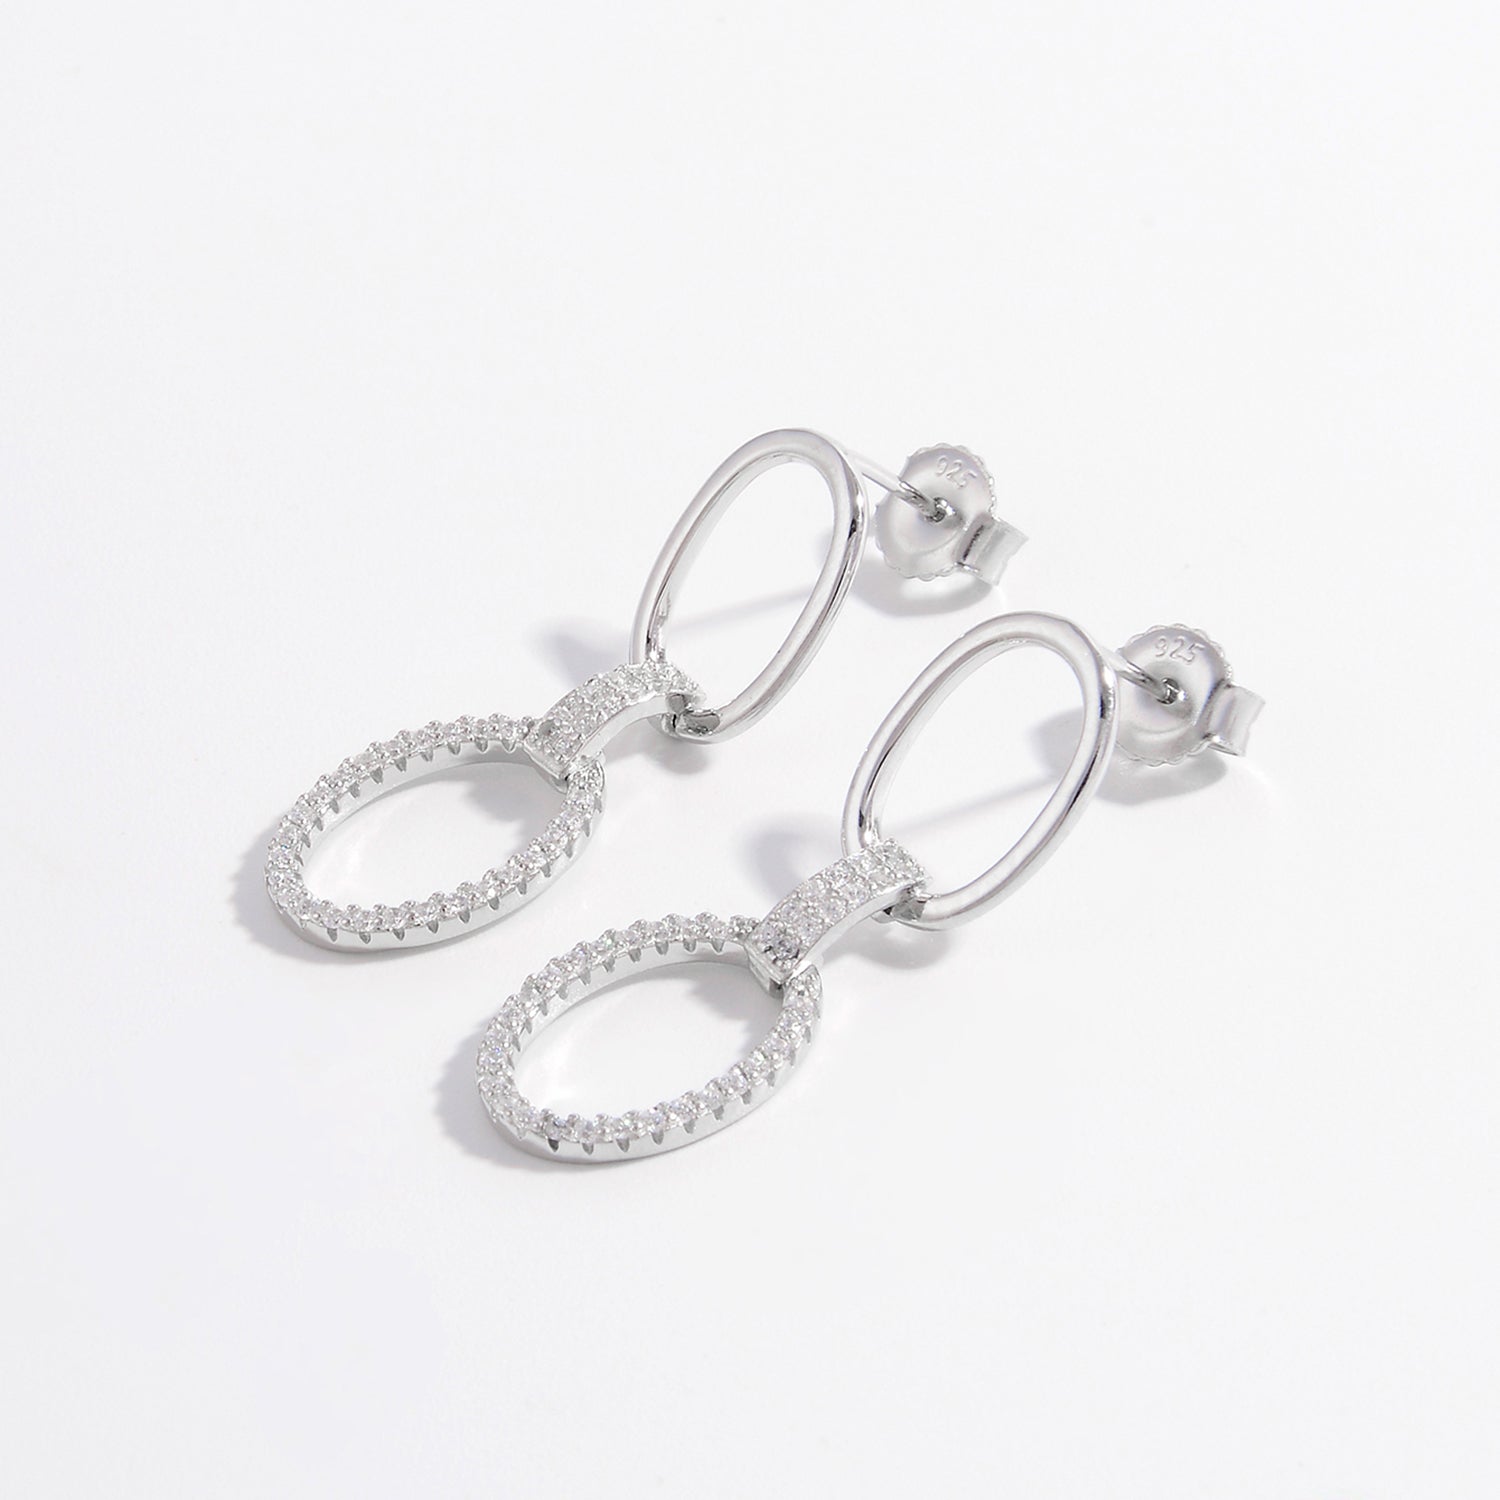 Zircon 925 Sterling Silver Dangle Earrings - OMG! Rose